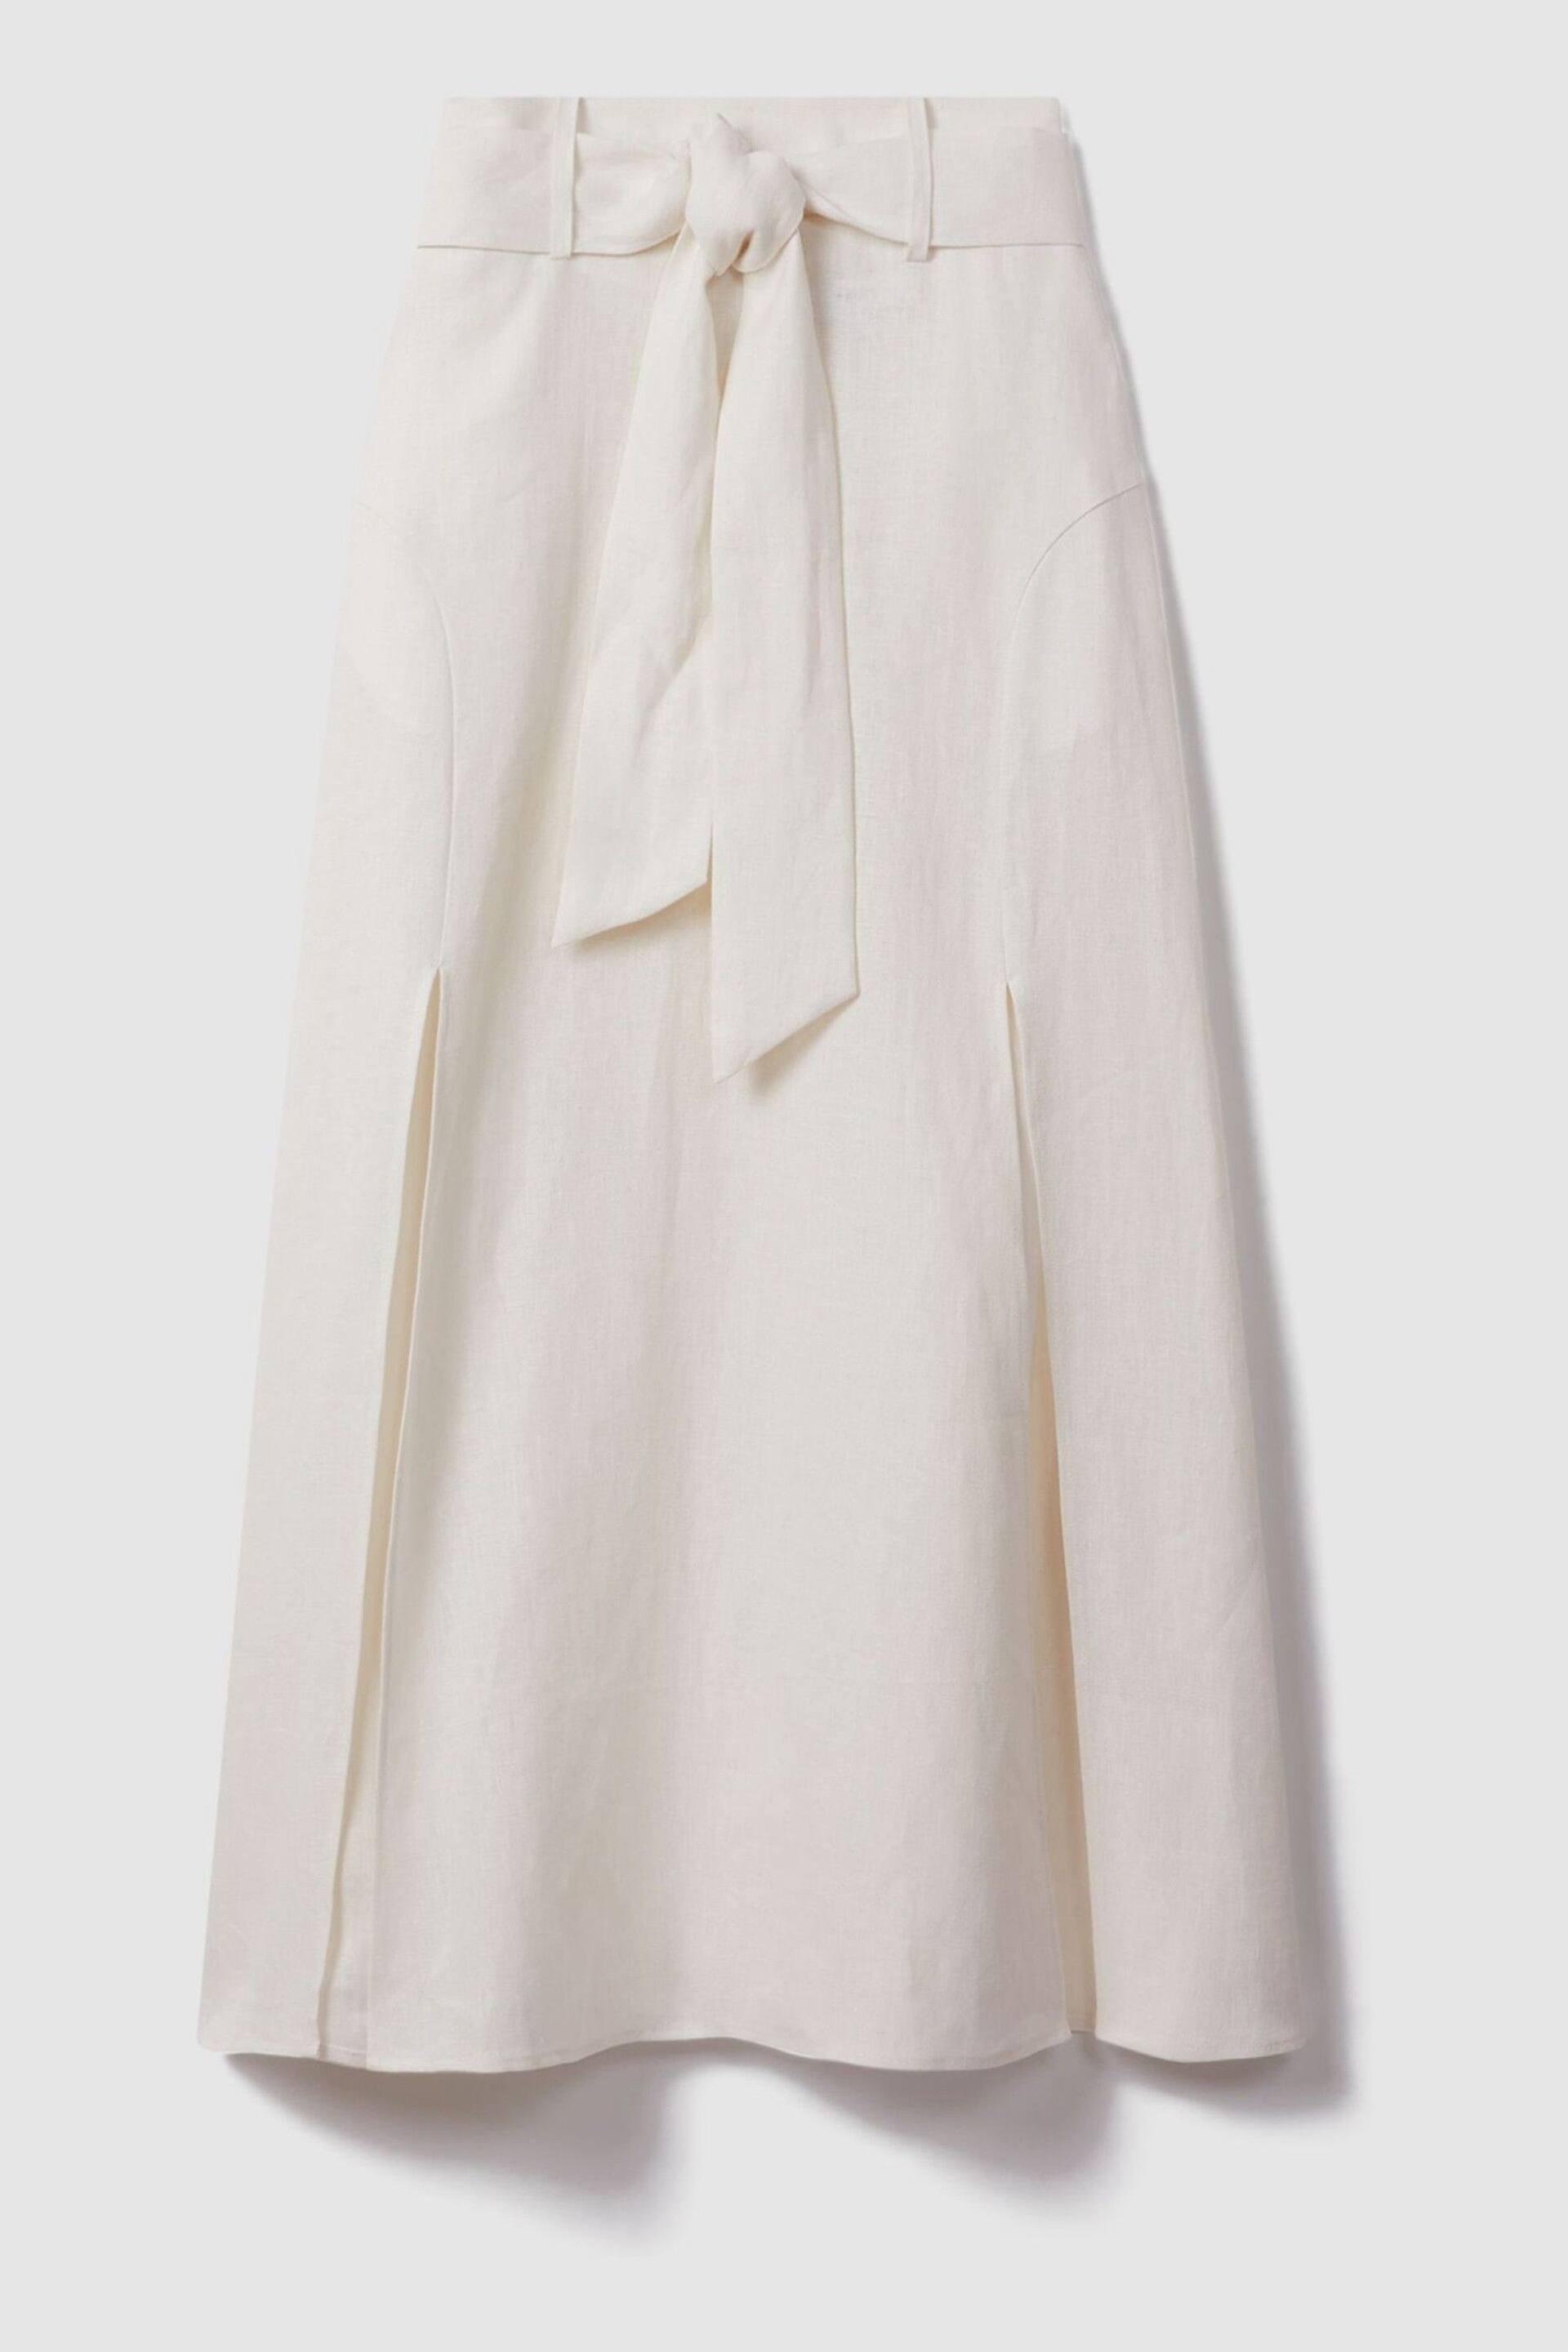 Reiss White Abigail High Rise Linen Maxi Skirt - Image 2 of 6